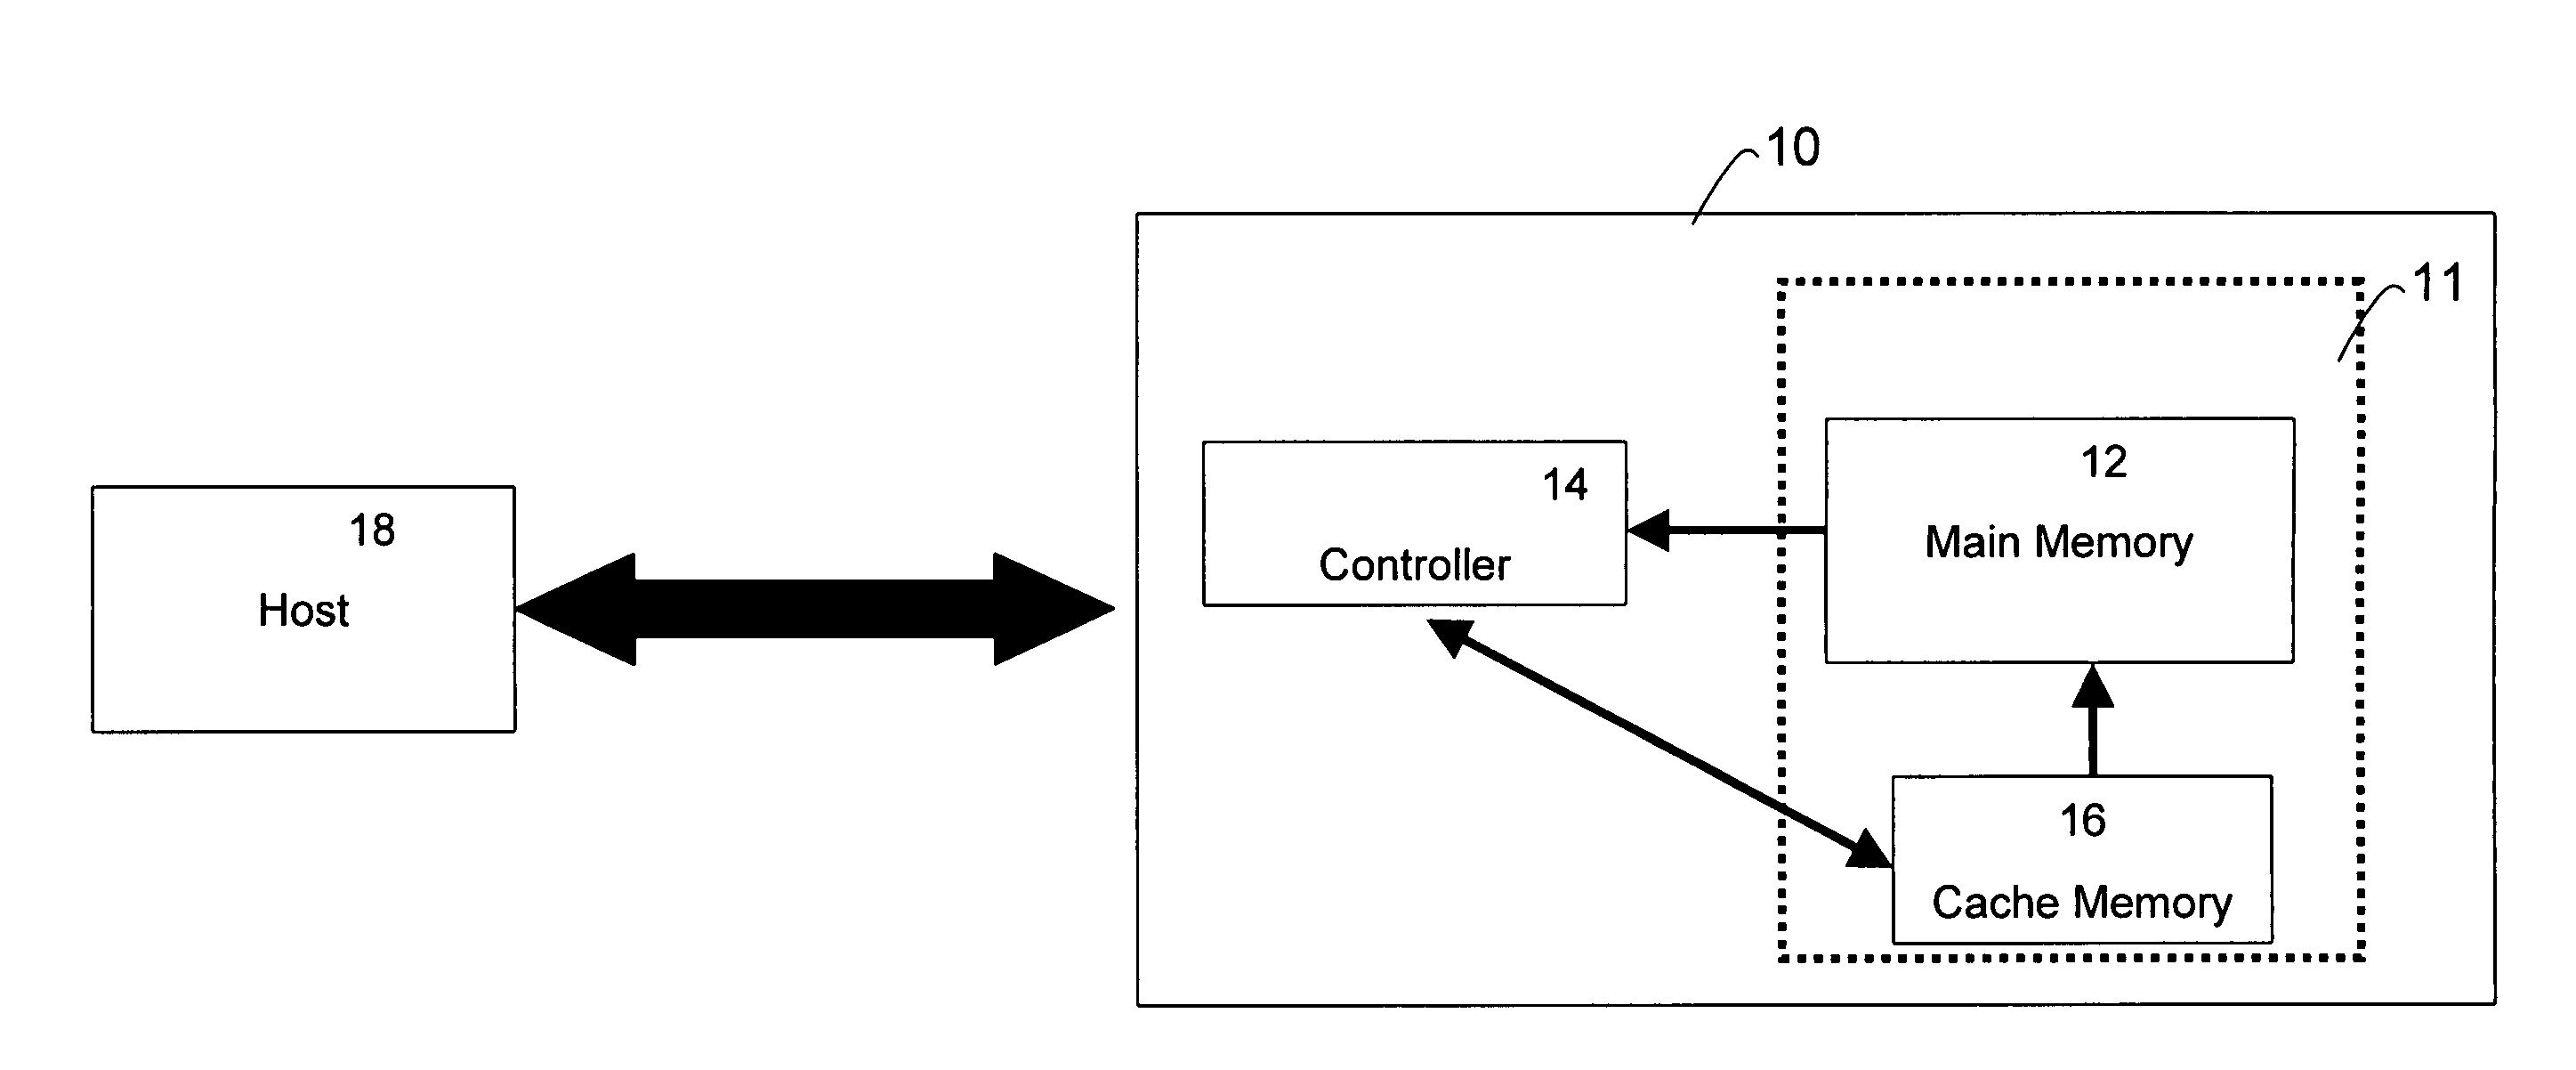 Cache control in a non-volatile memory device